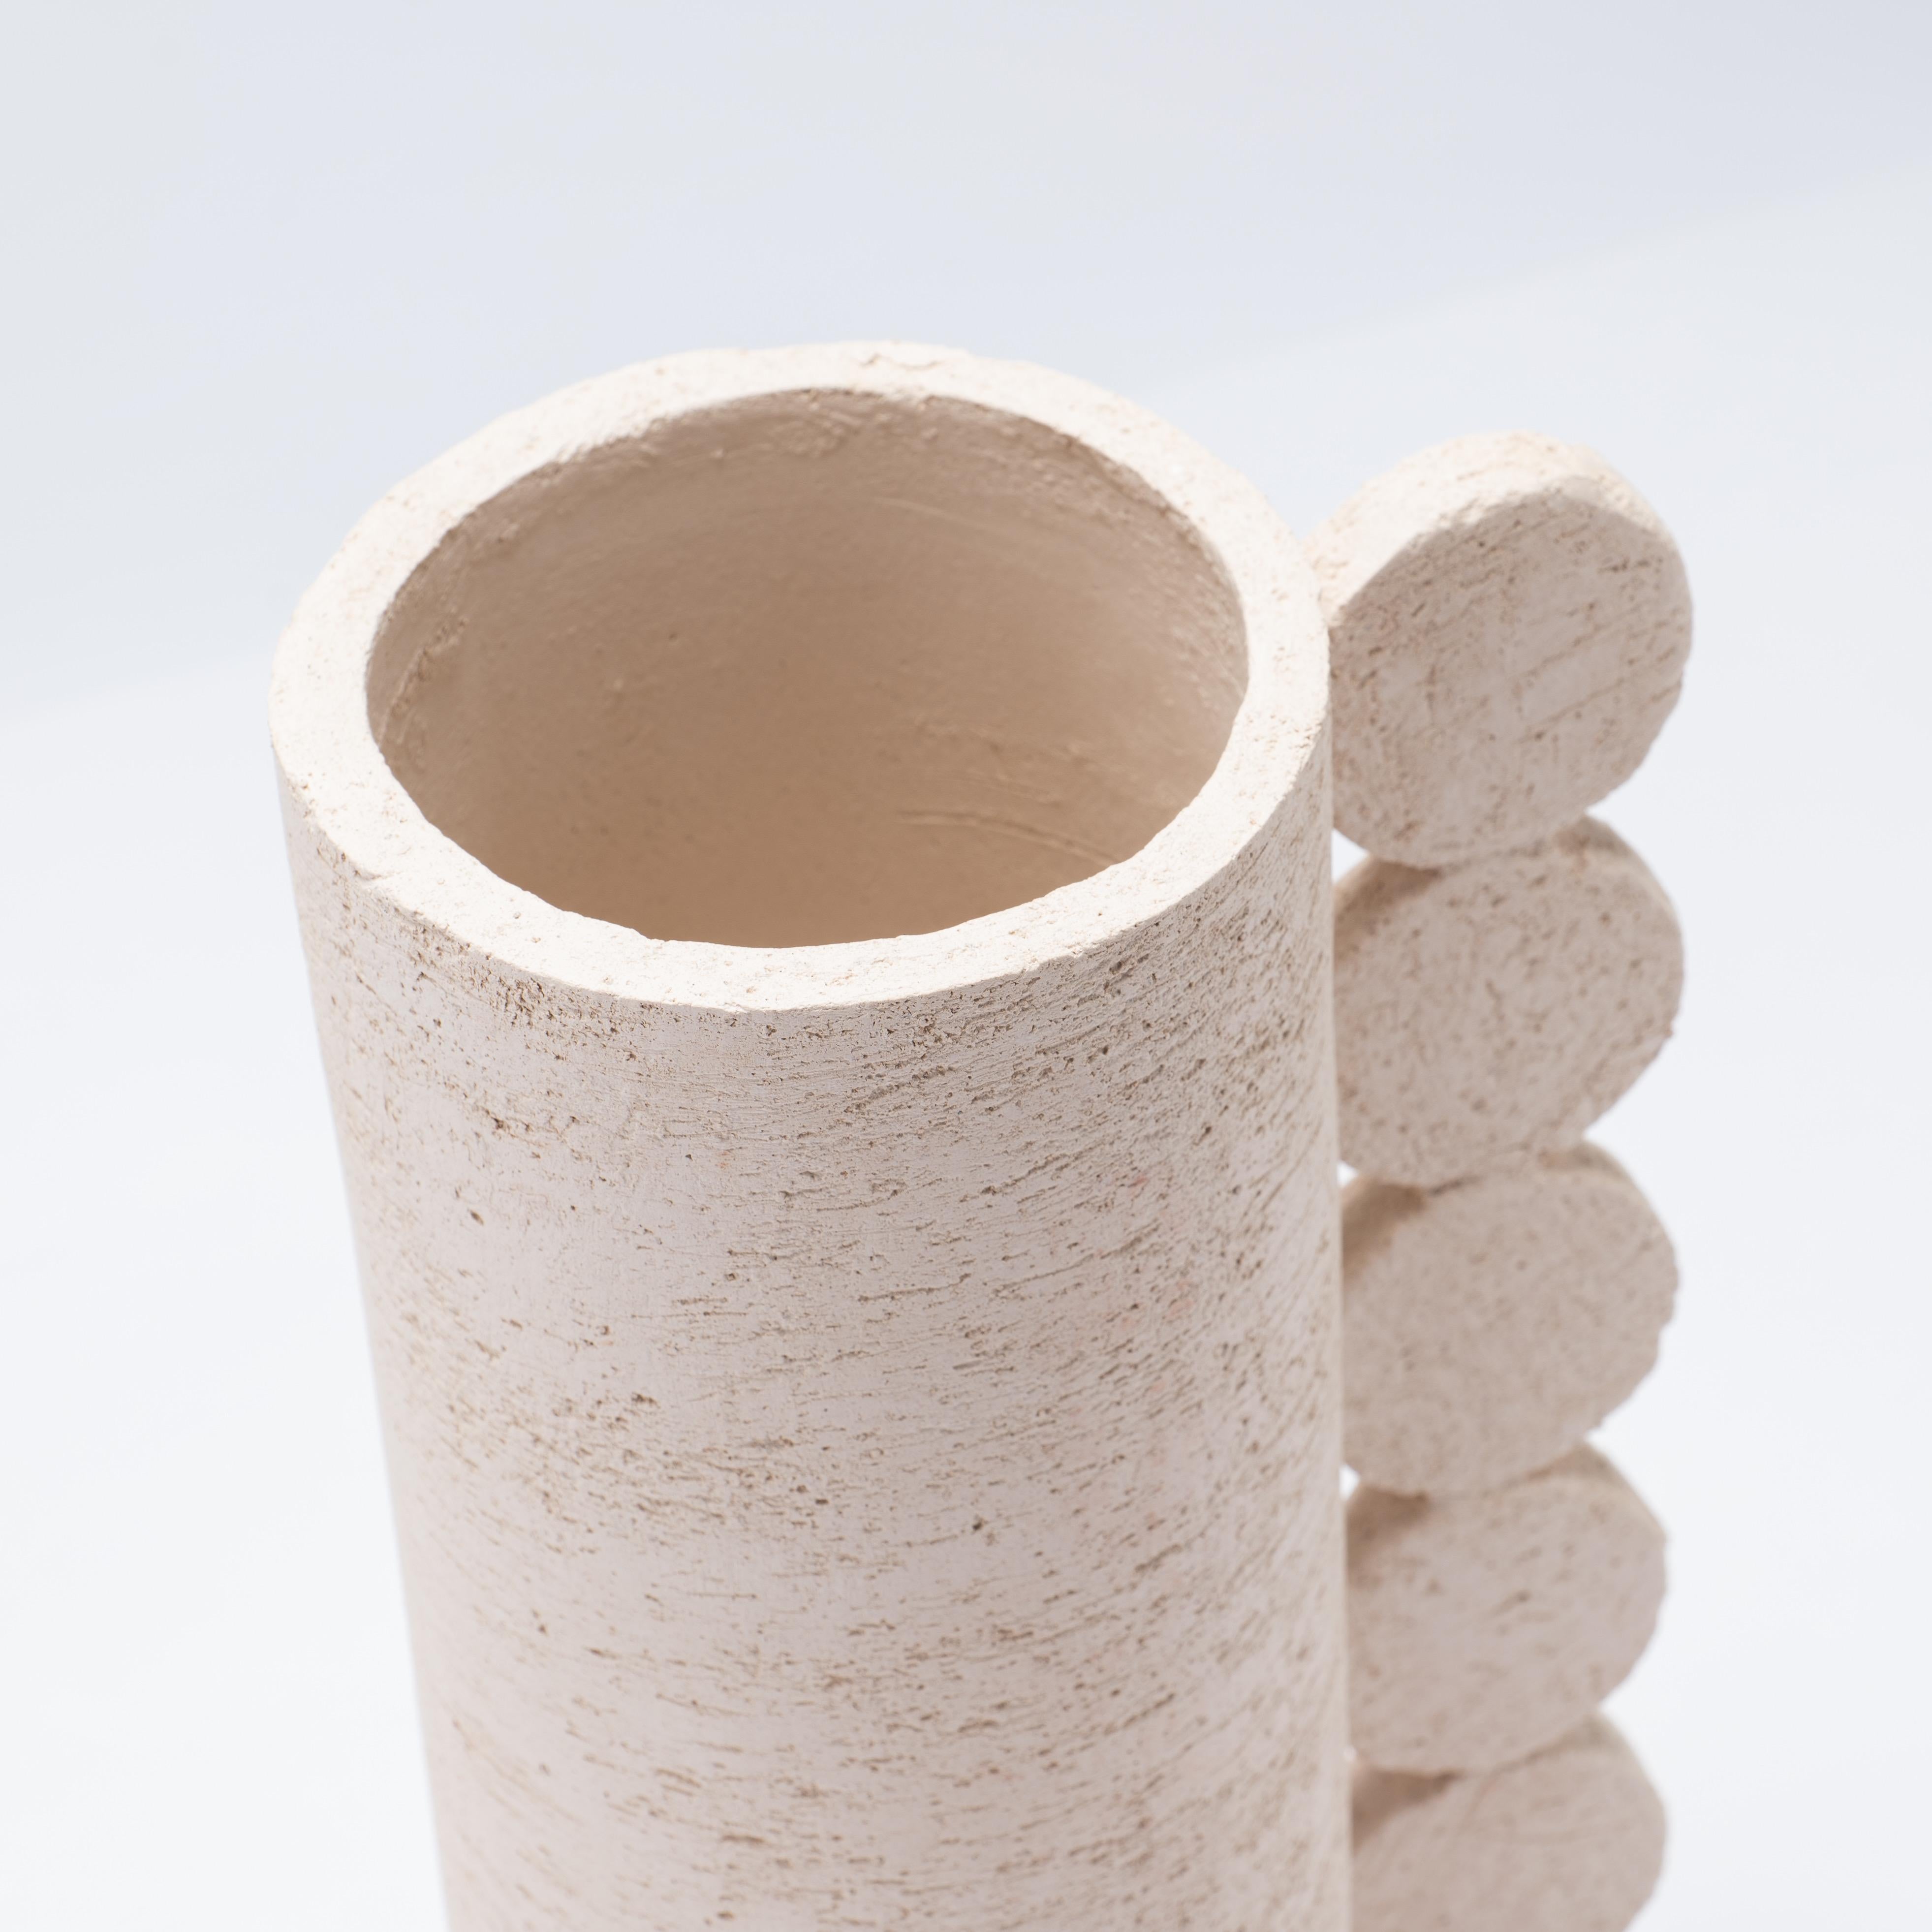 Le vase Bibi fait partie de la collection Australe.
Il est réalisé avec une plaque d'argile, c'est-à-dire en pliant une plaque d'argile autour d'une base en forme de disque pour créer la structure, qui est ensuite modelée manuellement pendant un